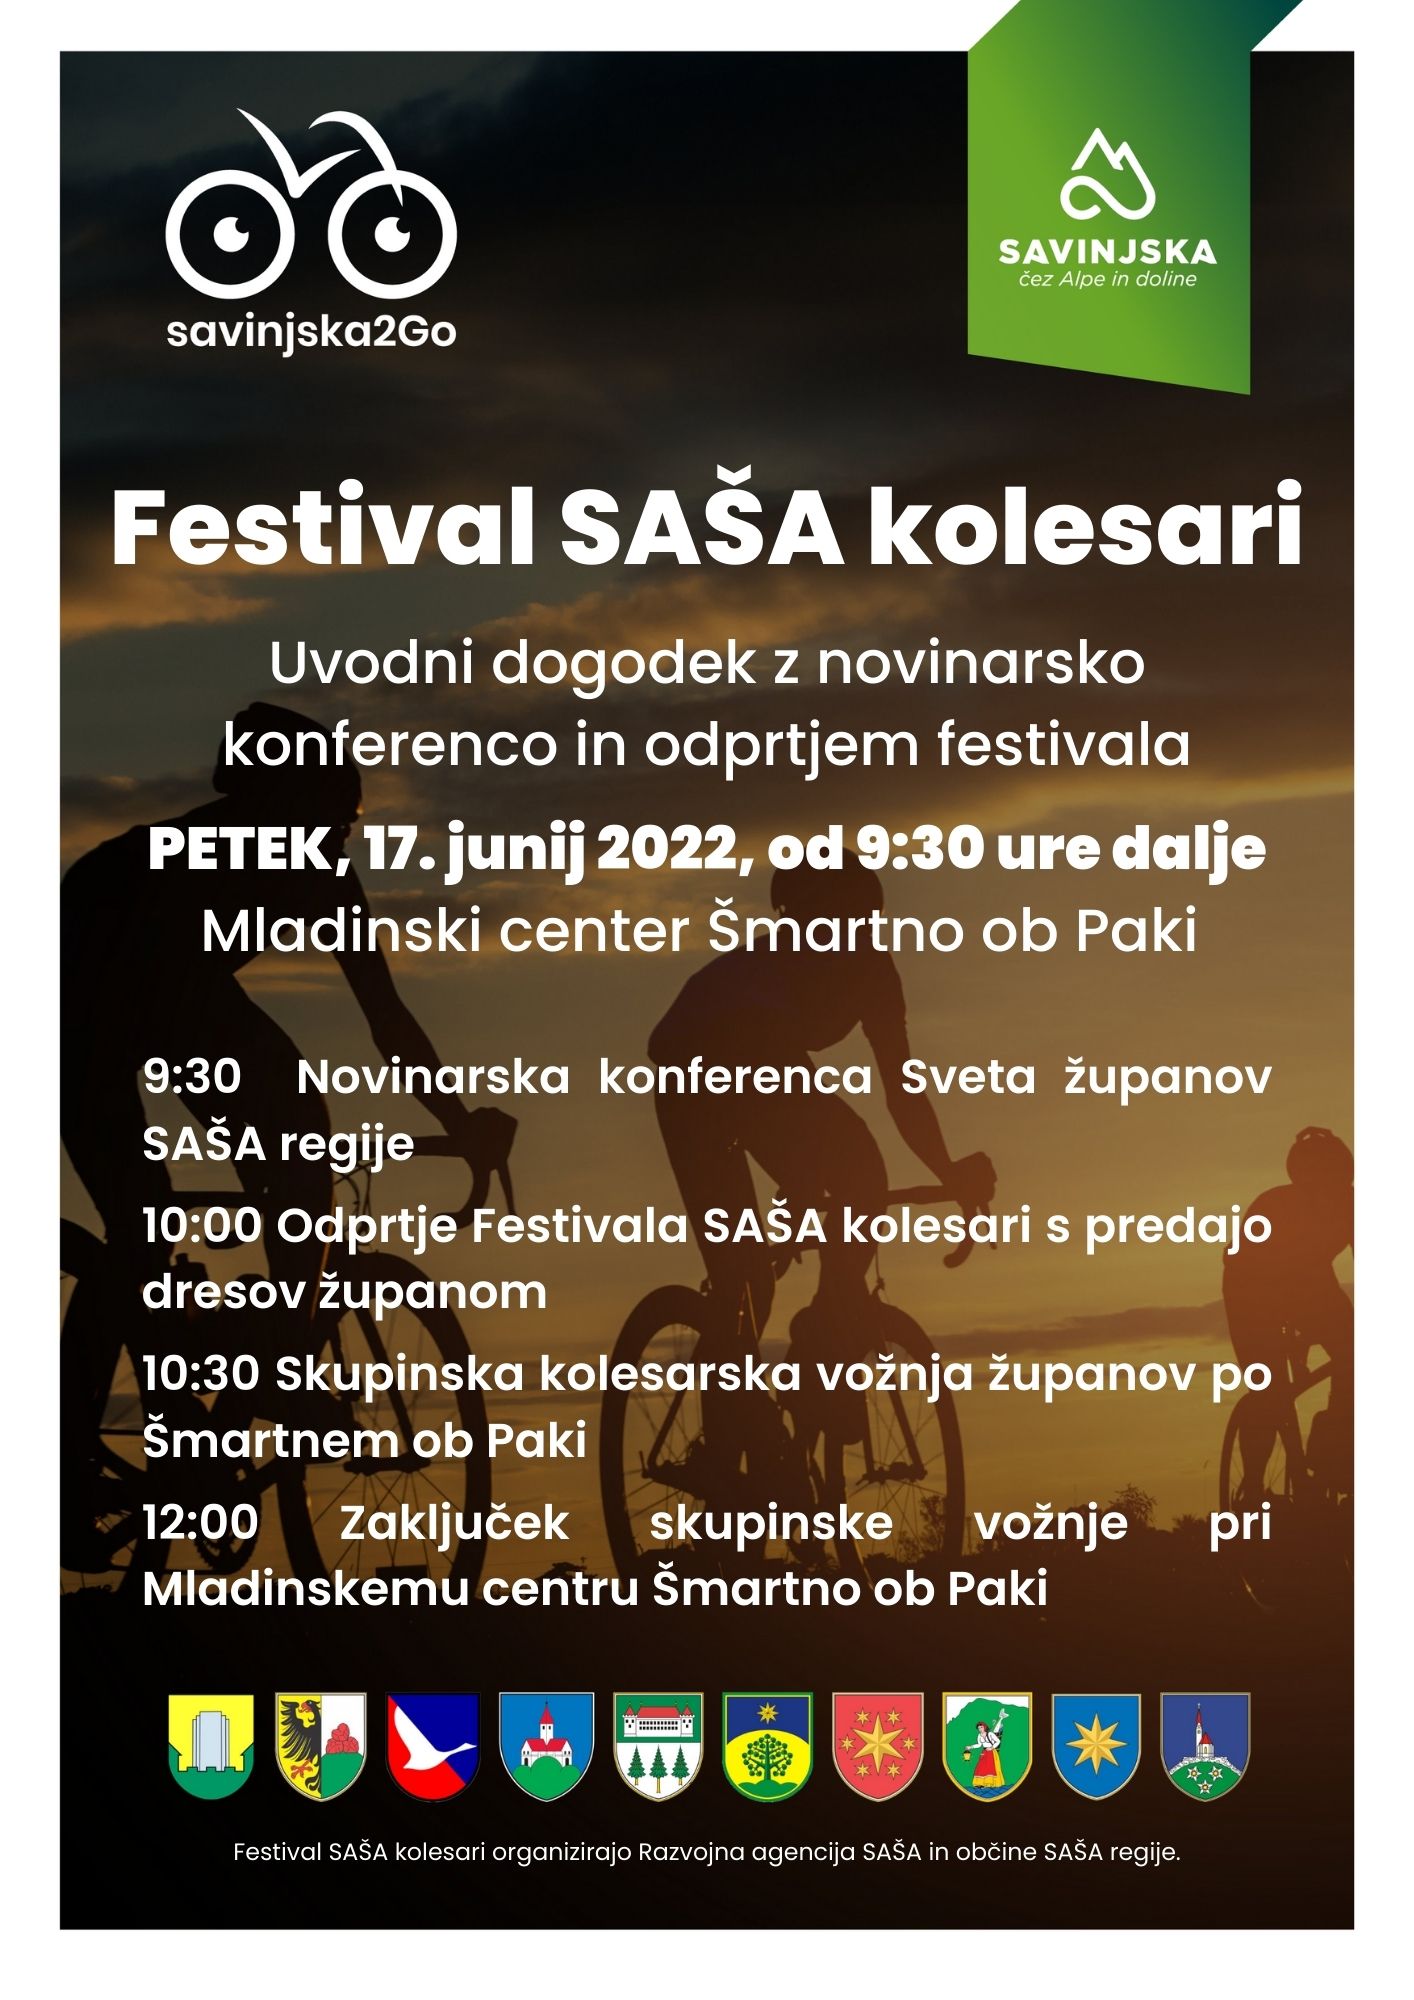 Uvodni dogodek Festival SAŠA kolesari